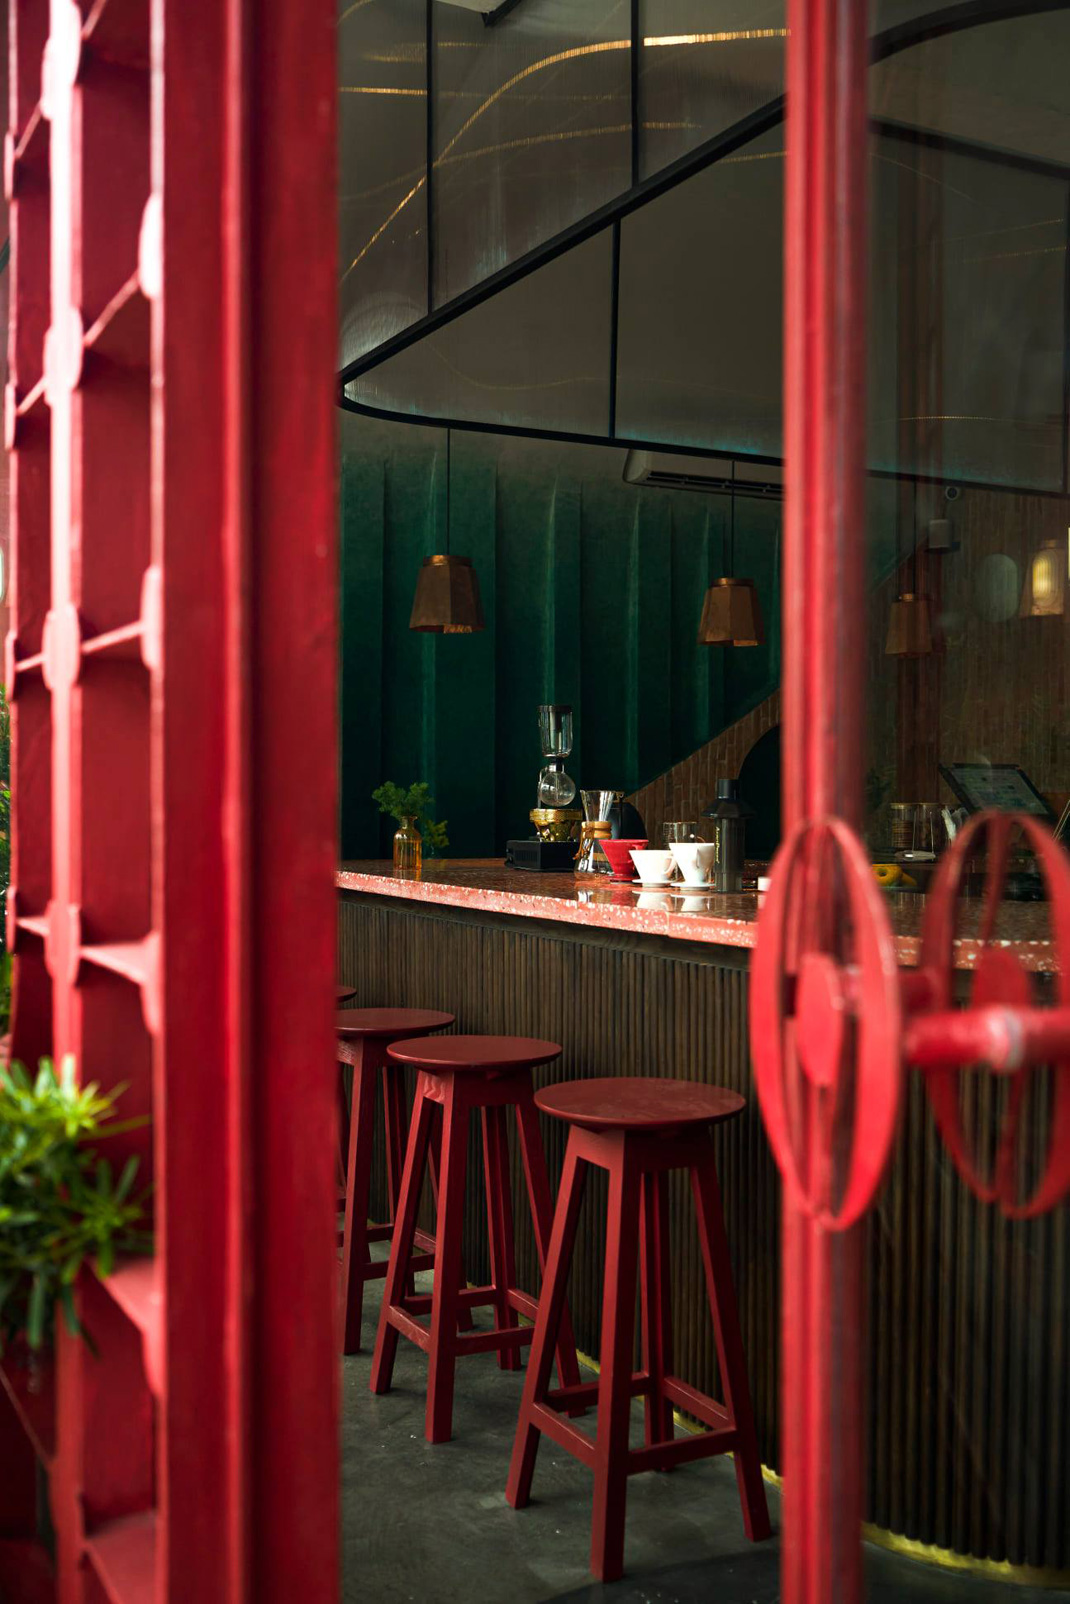 咖啡馆Okkio Caffe 越南 胡志明市 咖啡店 红色 水磨石 亚克力 logo设计 vi设计 空间设计